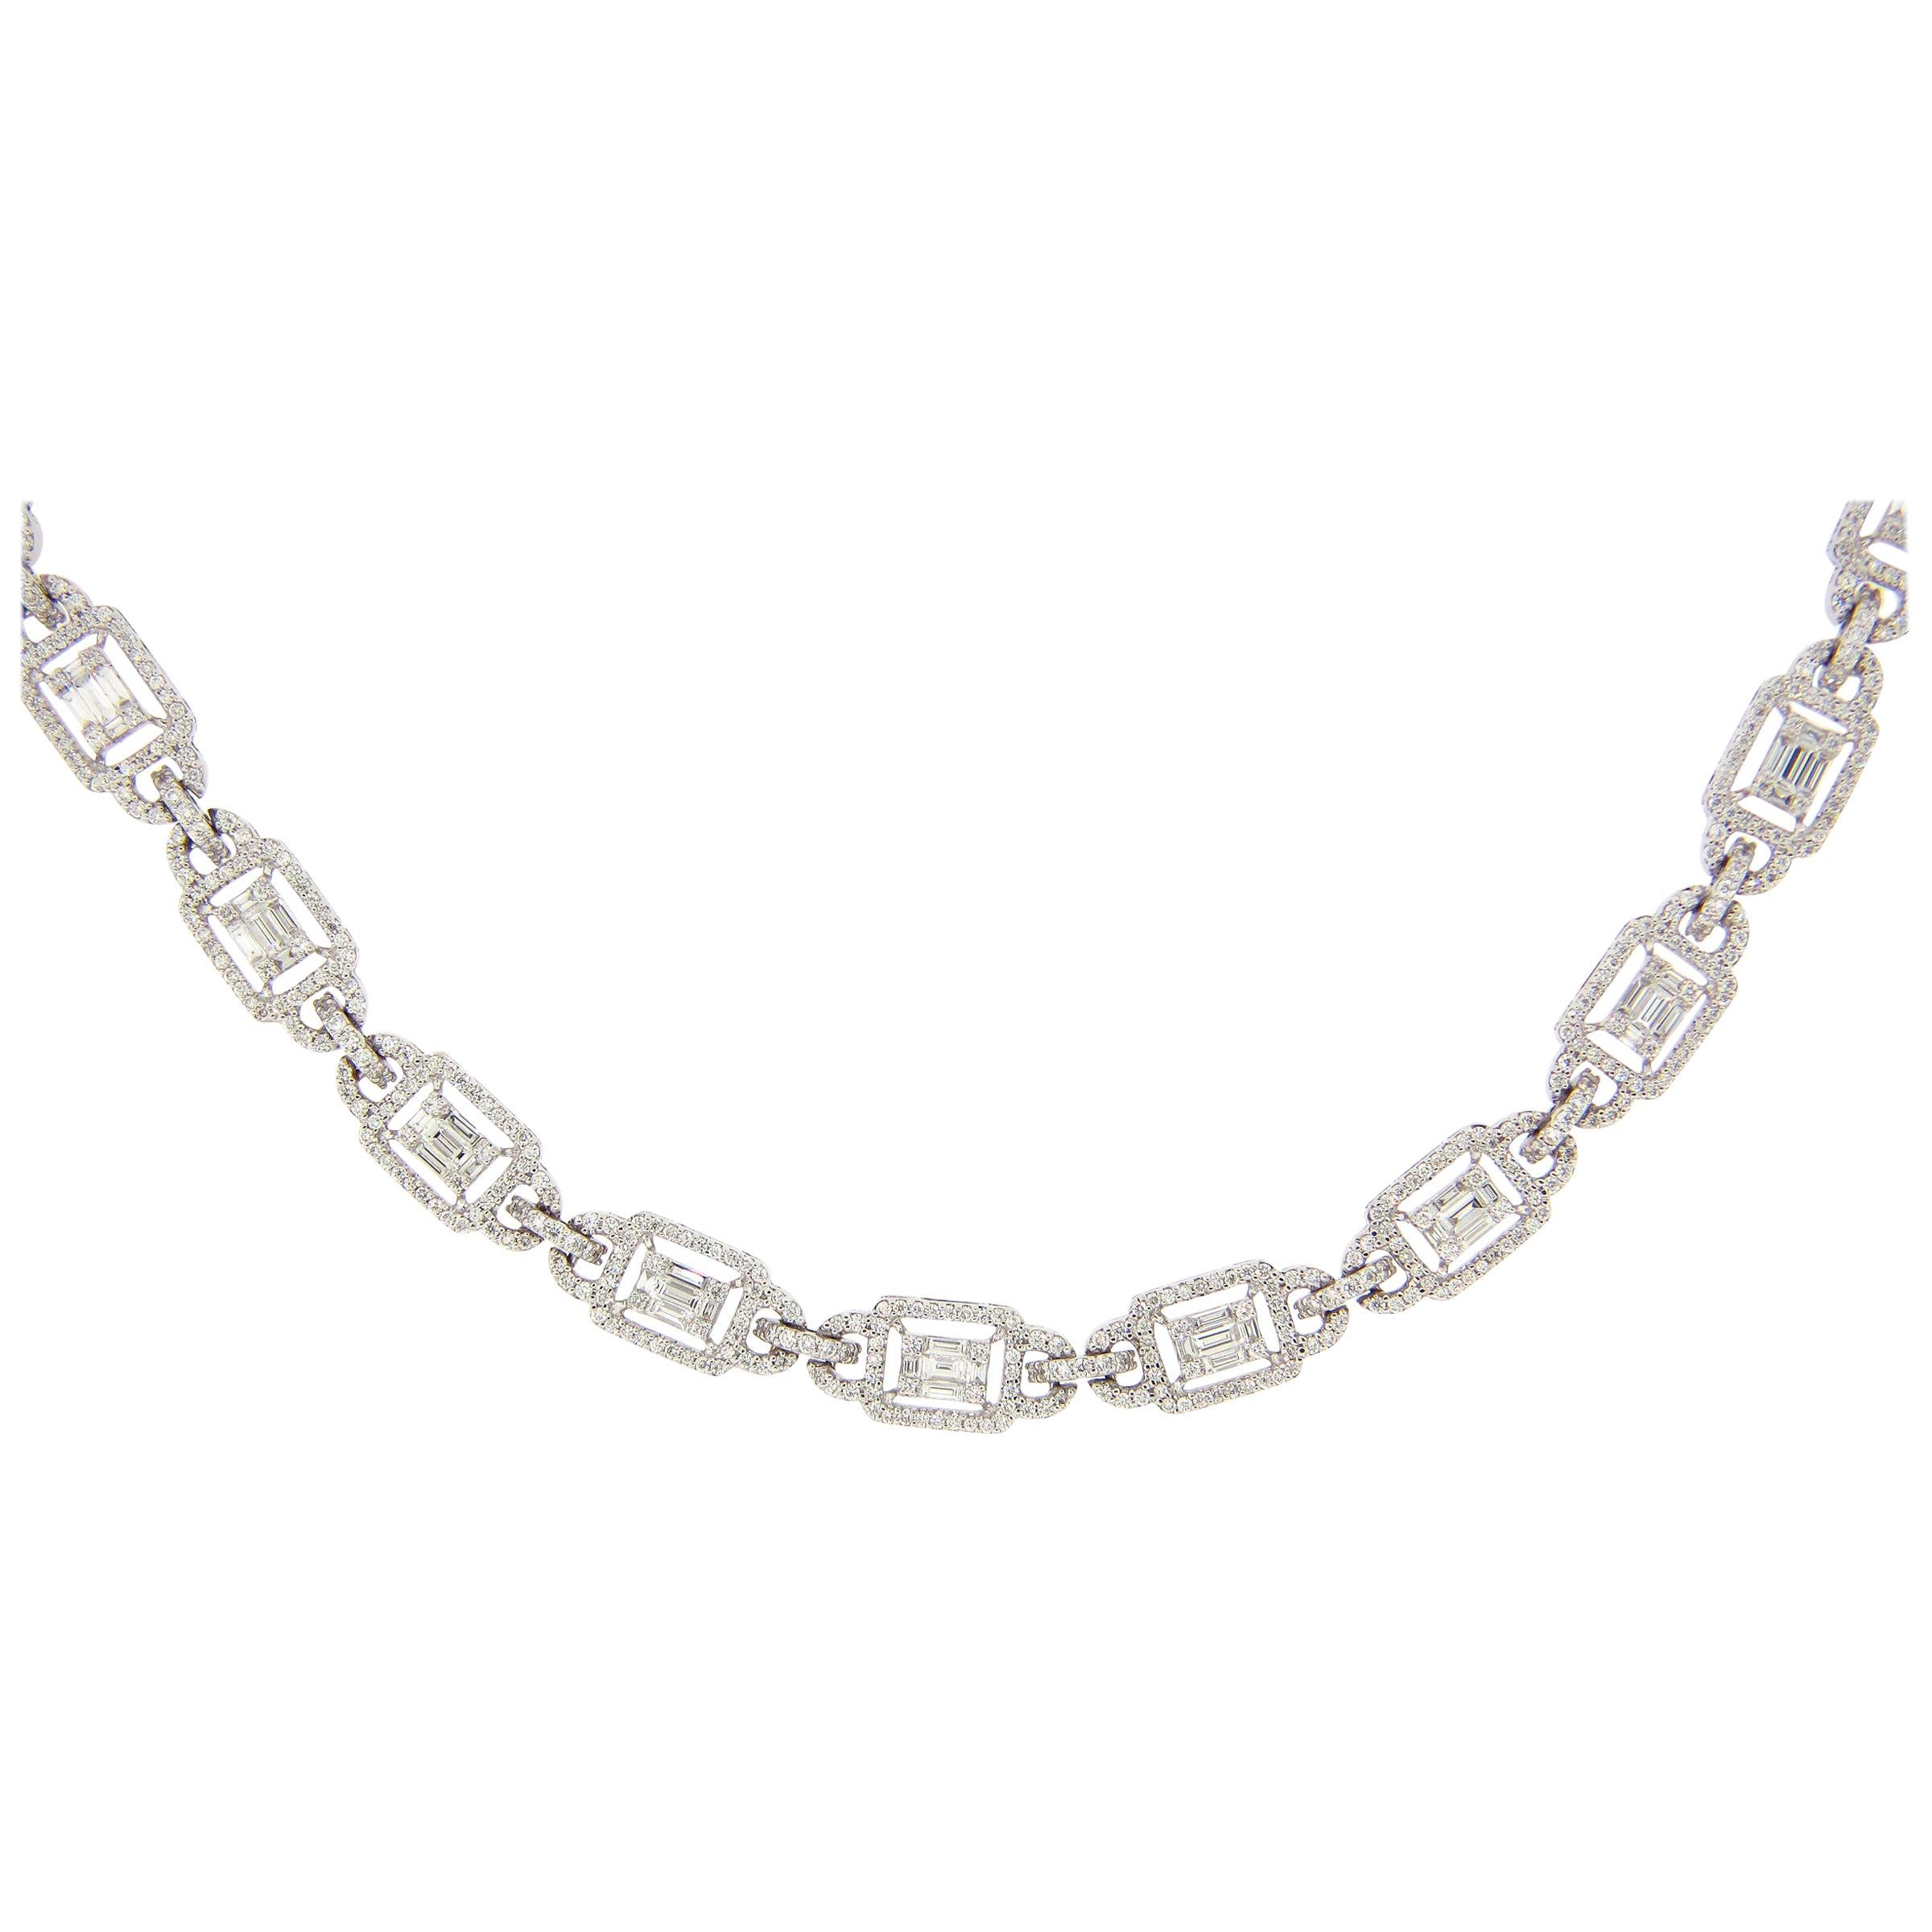 12.46 Carat Emerald Cut Cluster Diamond Illusion Necklace For Sale